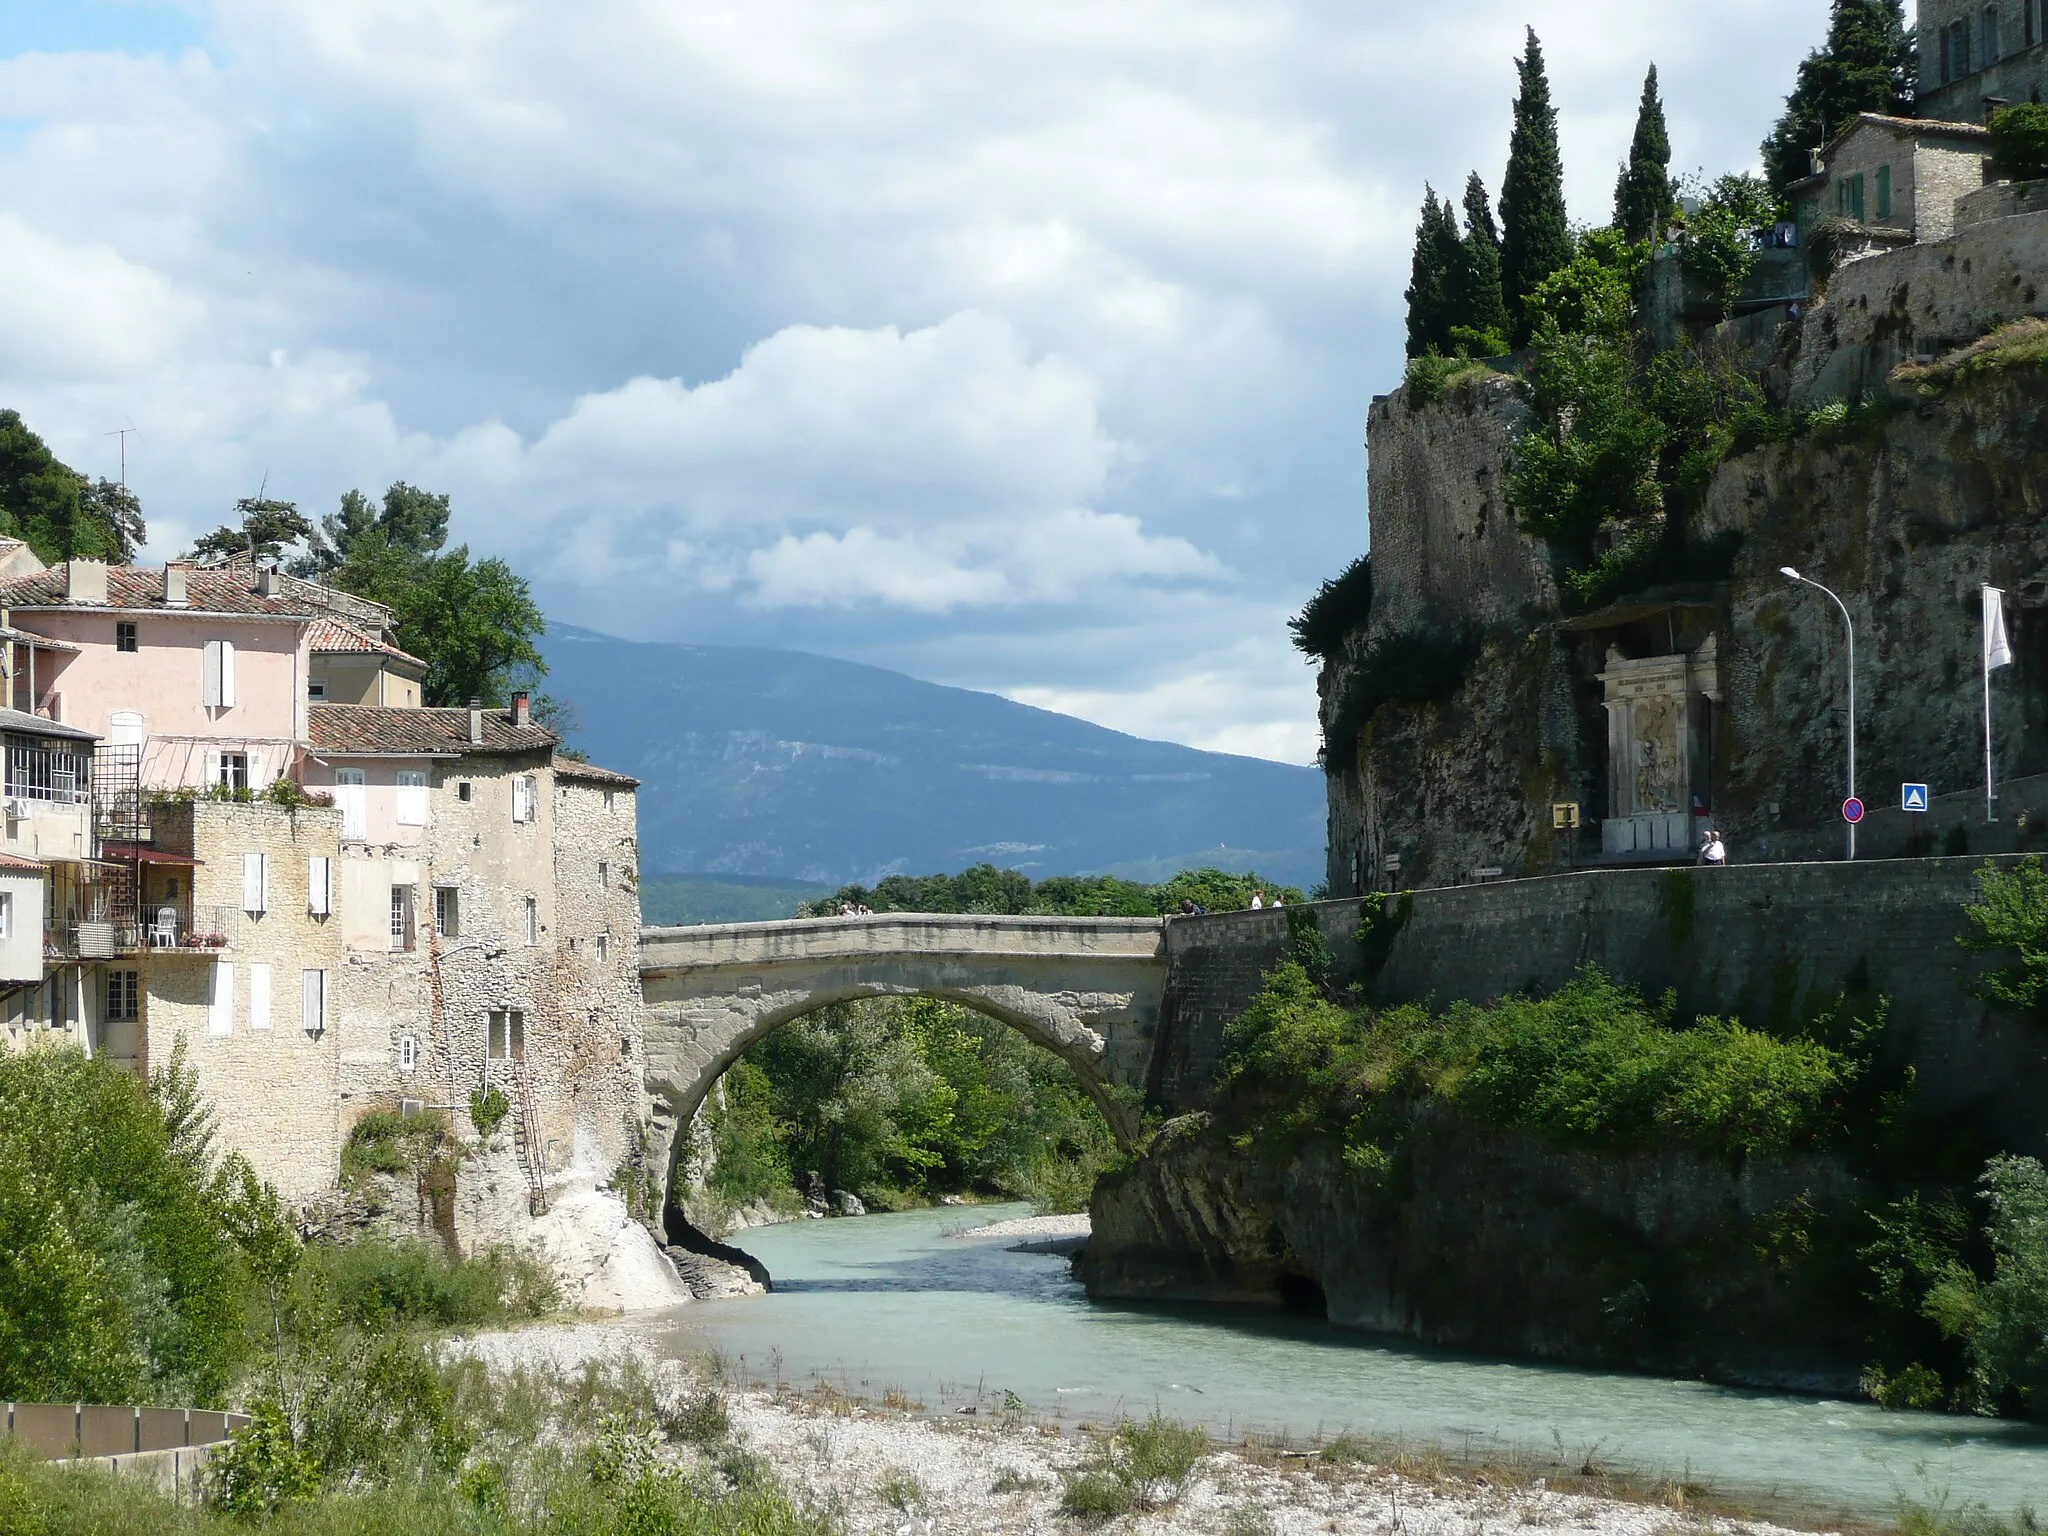 Photo showing: The Roman Bridge at Vaison-la-Romaine, Vaucluse department, Provence, France